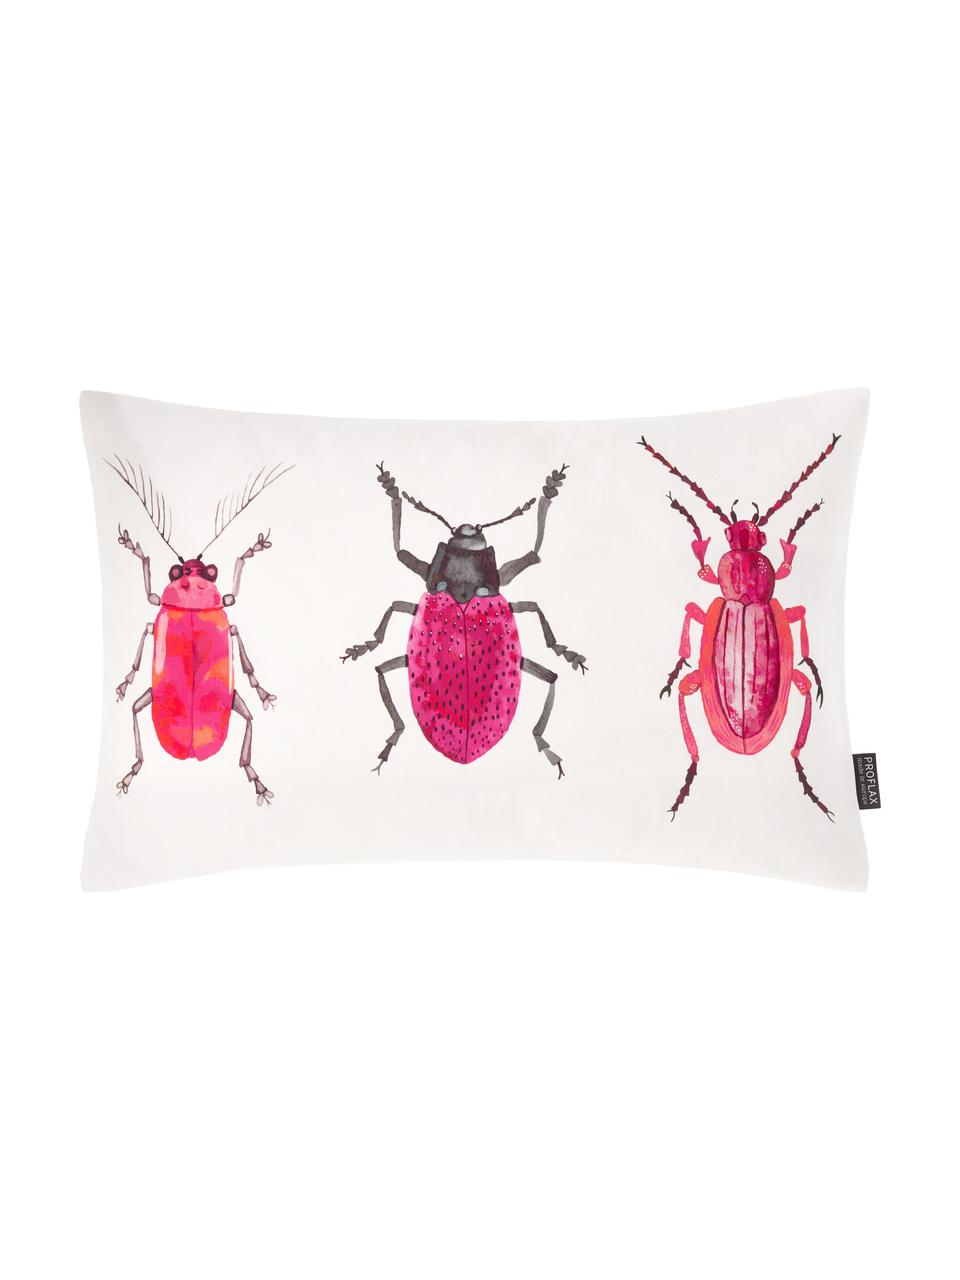 Kissenhülle Amigos mit Käfermotiven, 100% Baumwolle, Weiß, Pink, Schwarz, 30 x 50 cm